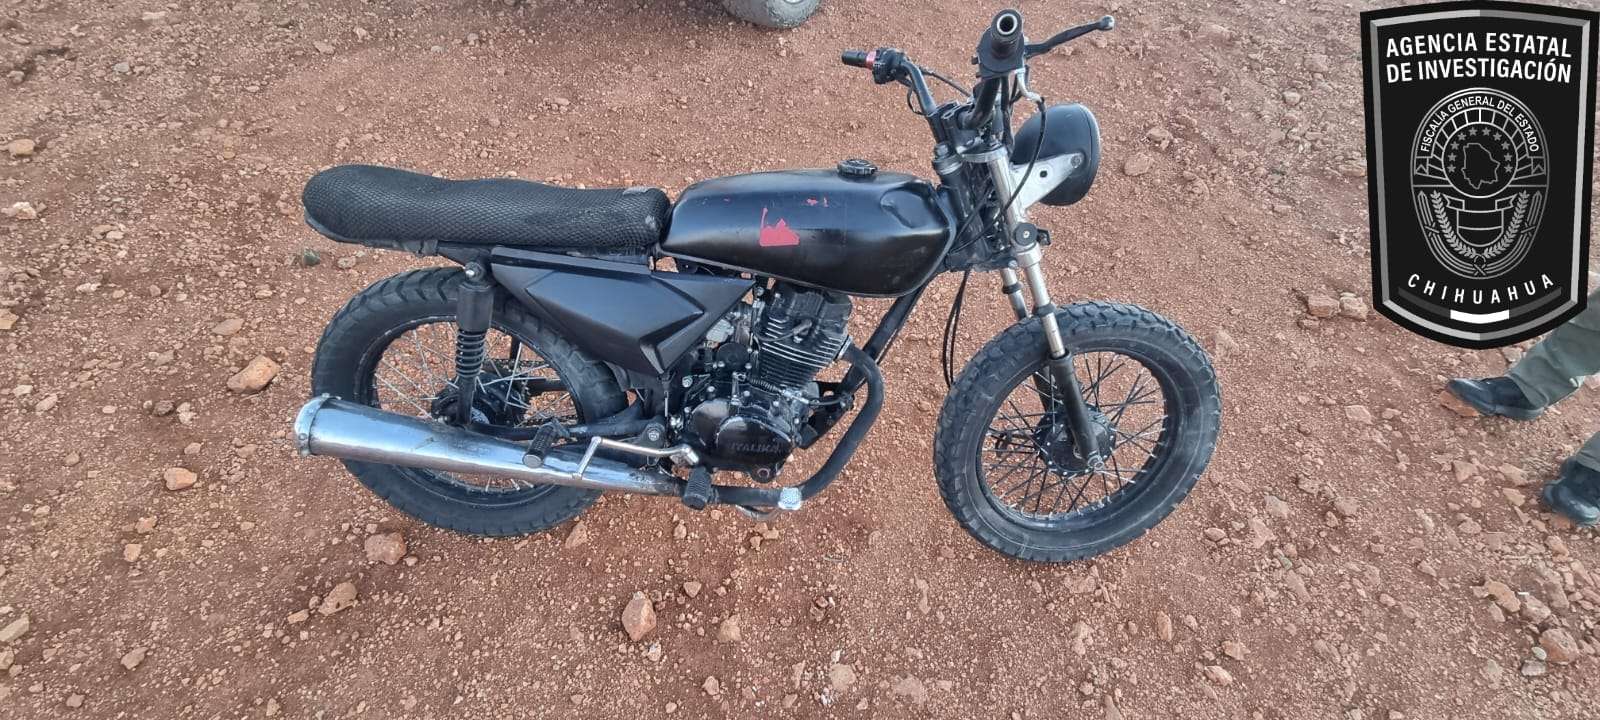 Recuperan motocicleta robada en Parral
